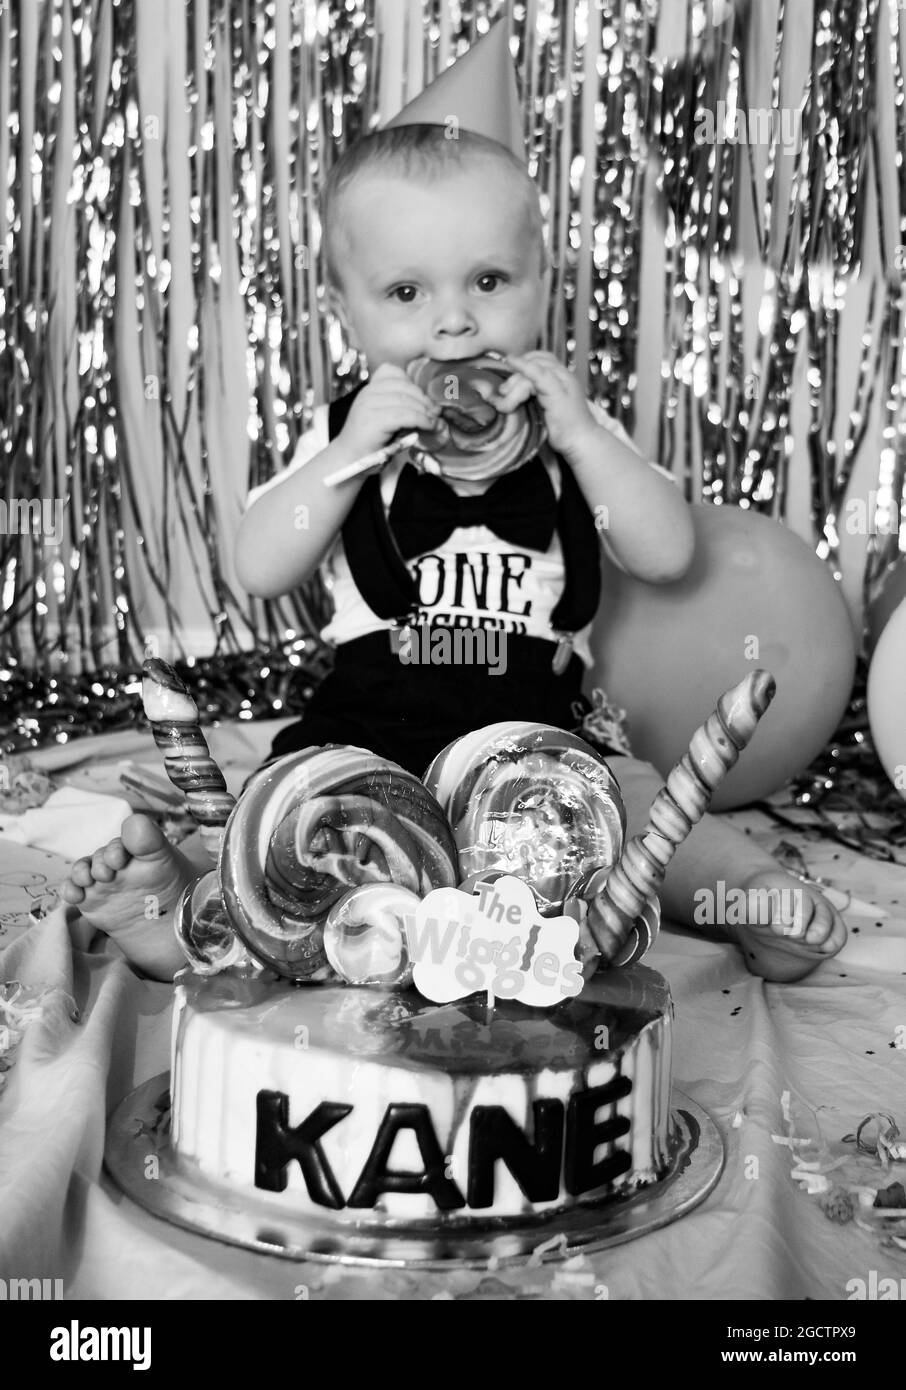 Wiggles Cake Smash Photography Session mit niedlichem Baby, der eins wird. Seinen ersten Geburtstag feiern Stockfoto